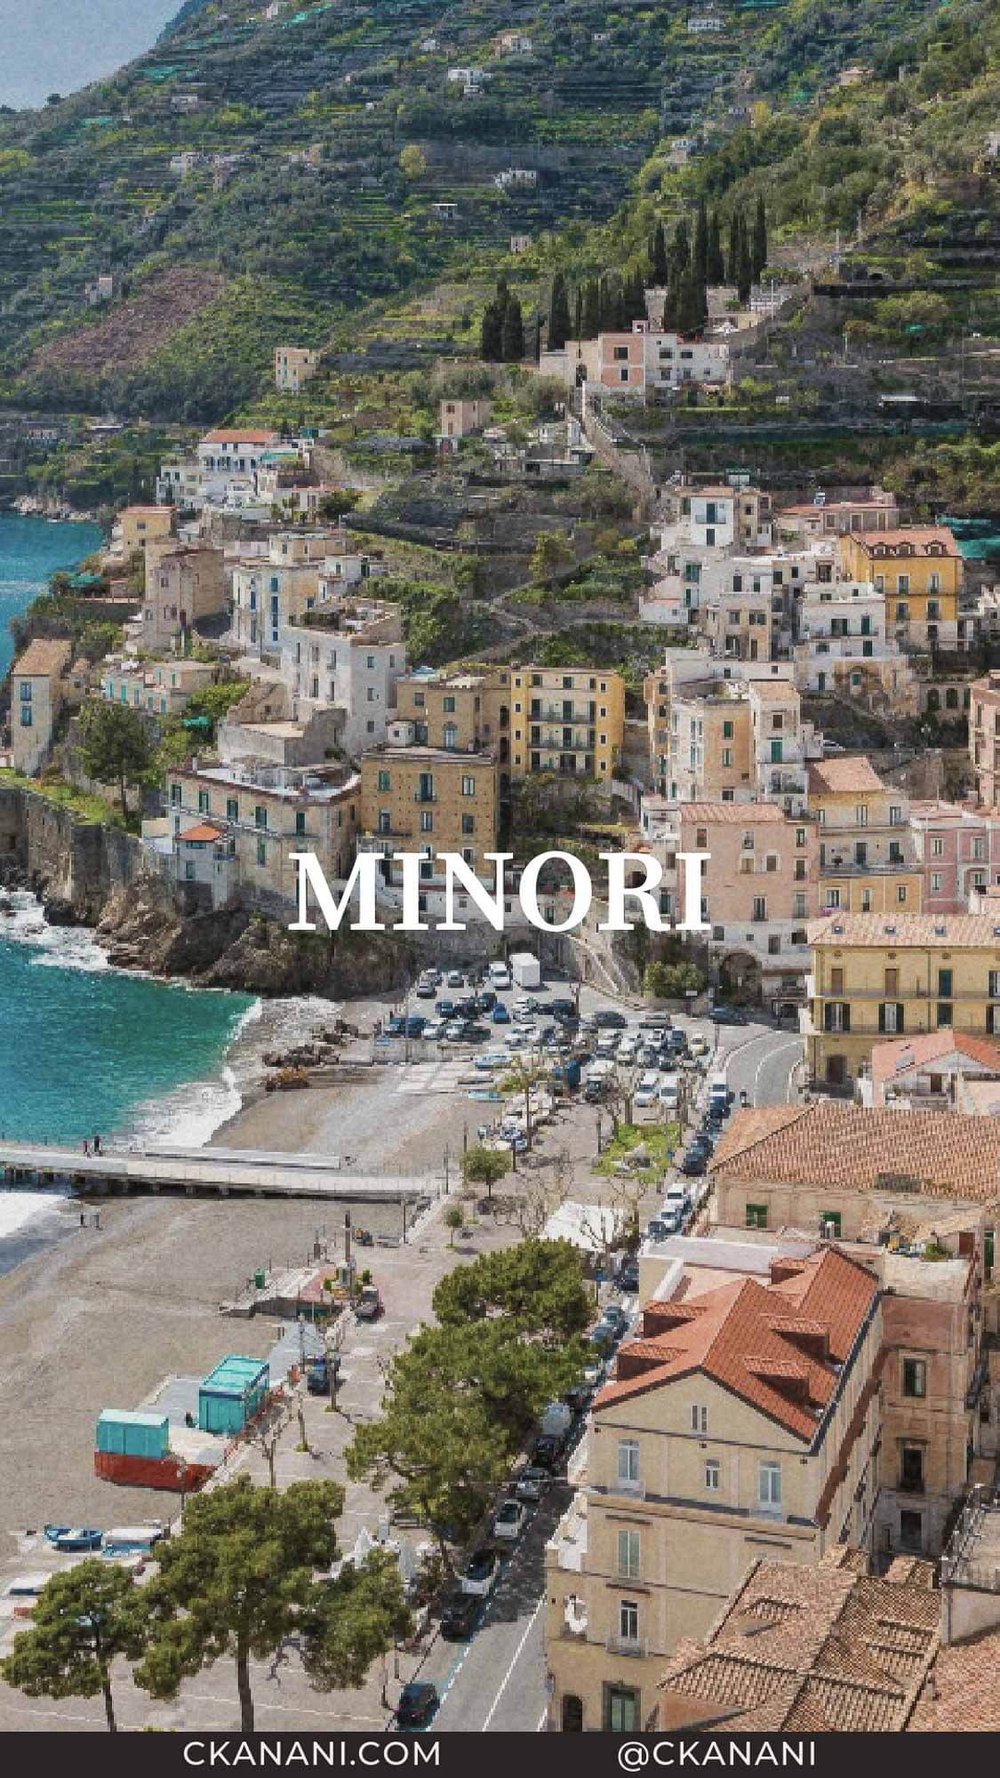 Amalfi Coast Towns You Must Visit: Minori